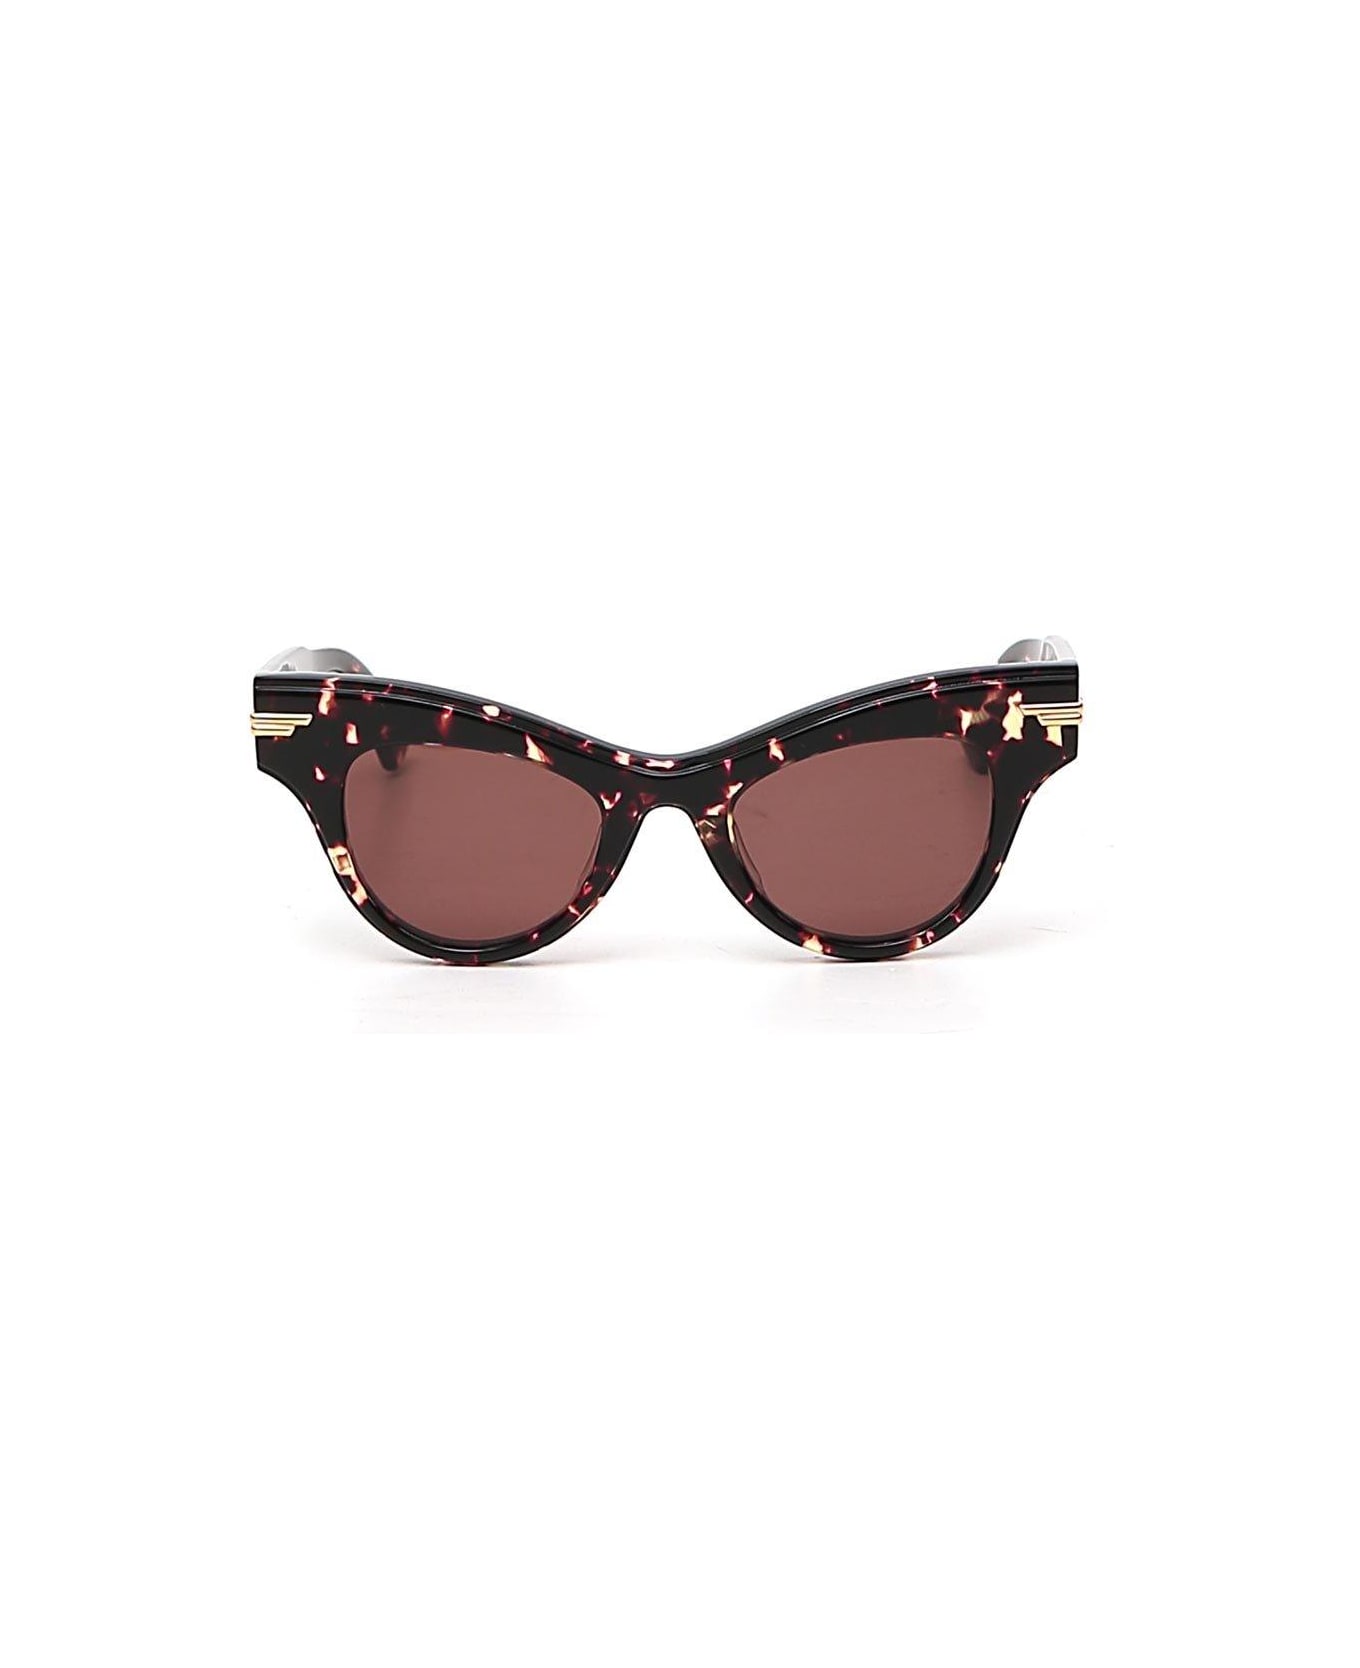 Bottega Veneta Cat-eye Frame Sunglasses - BROWN サングラス